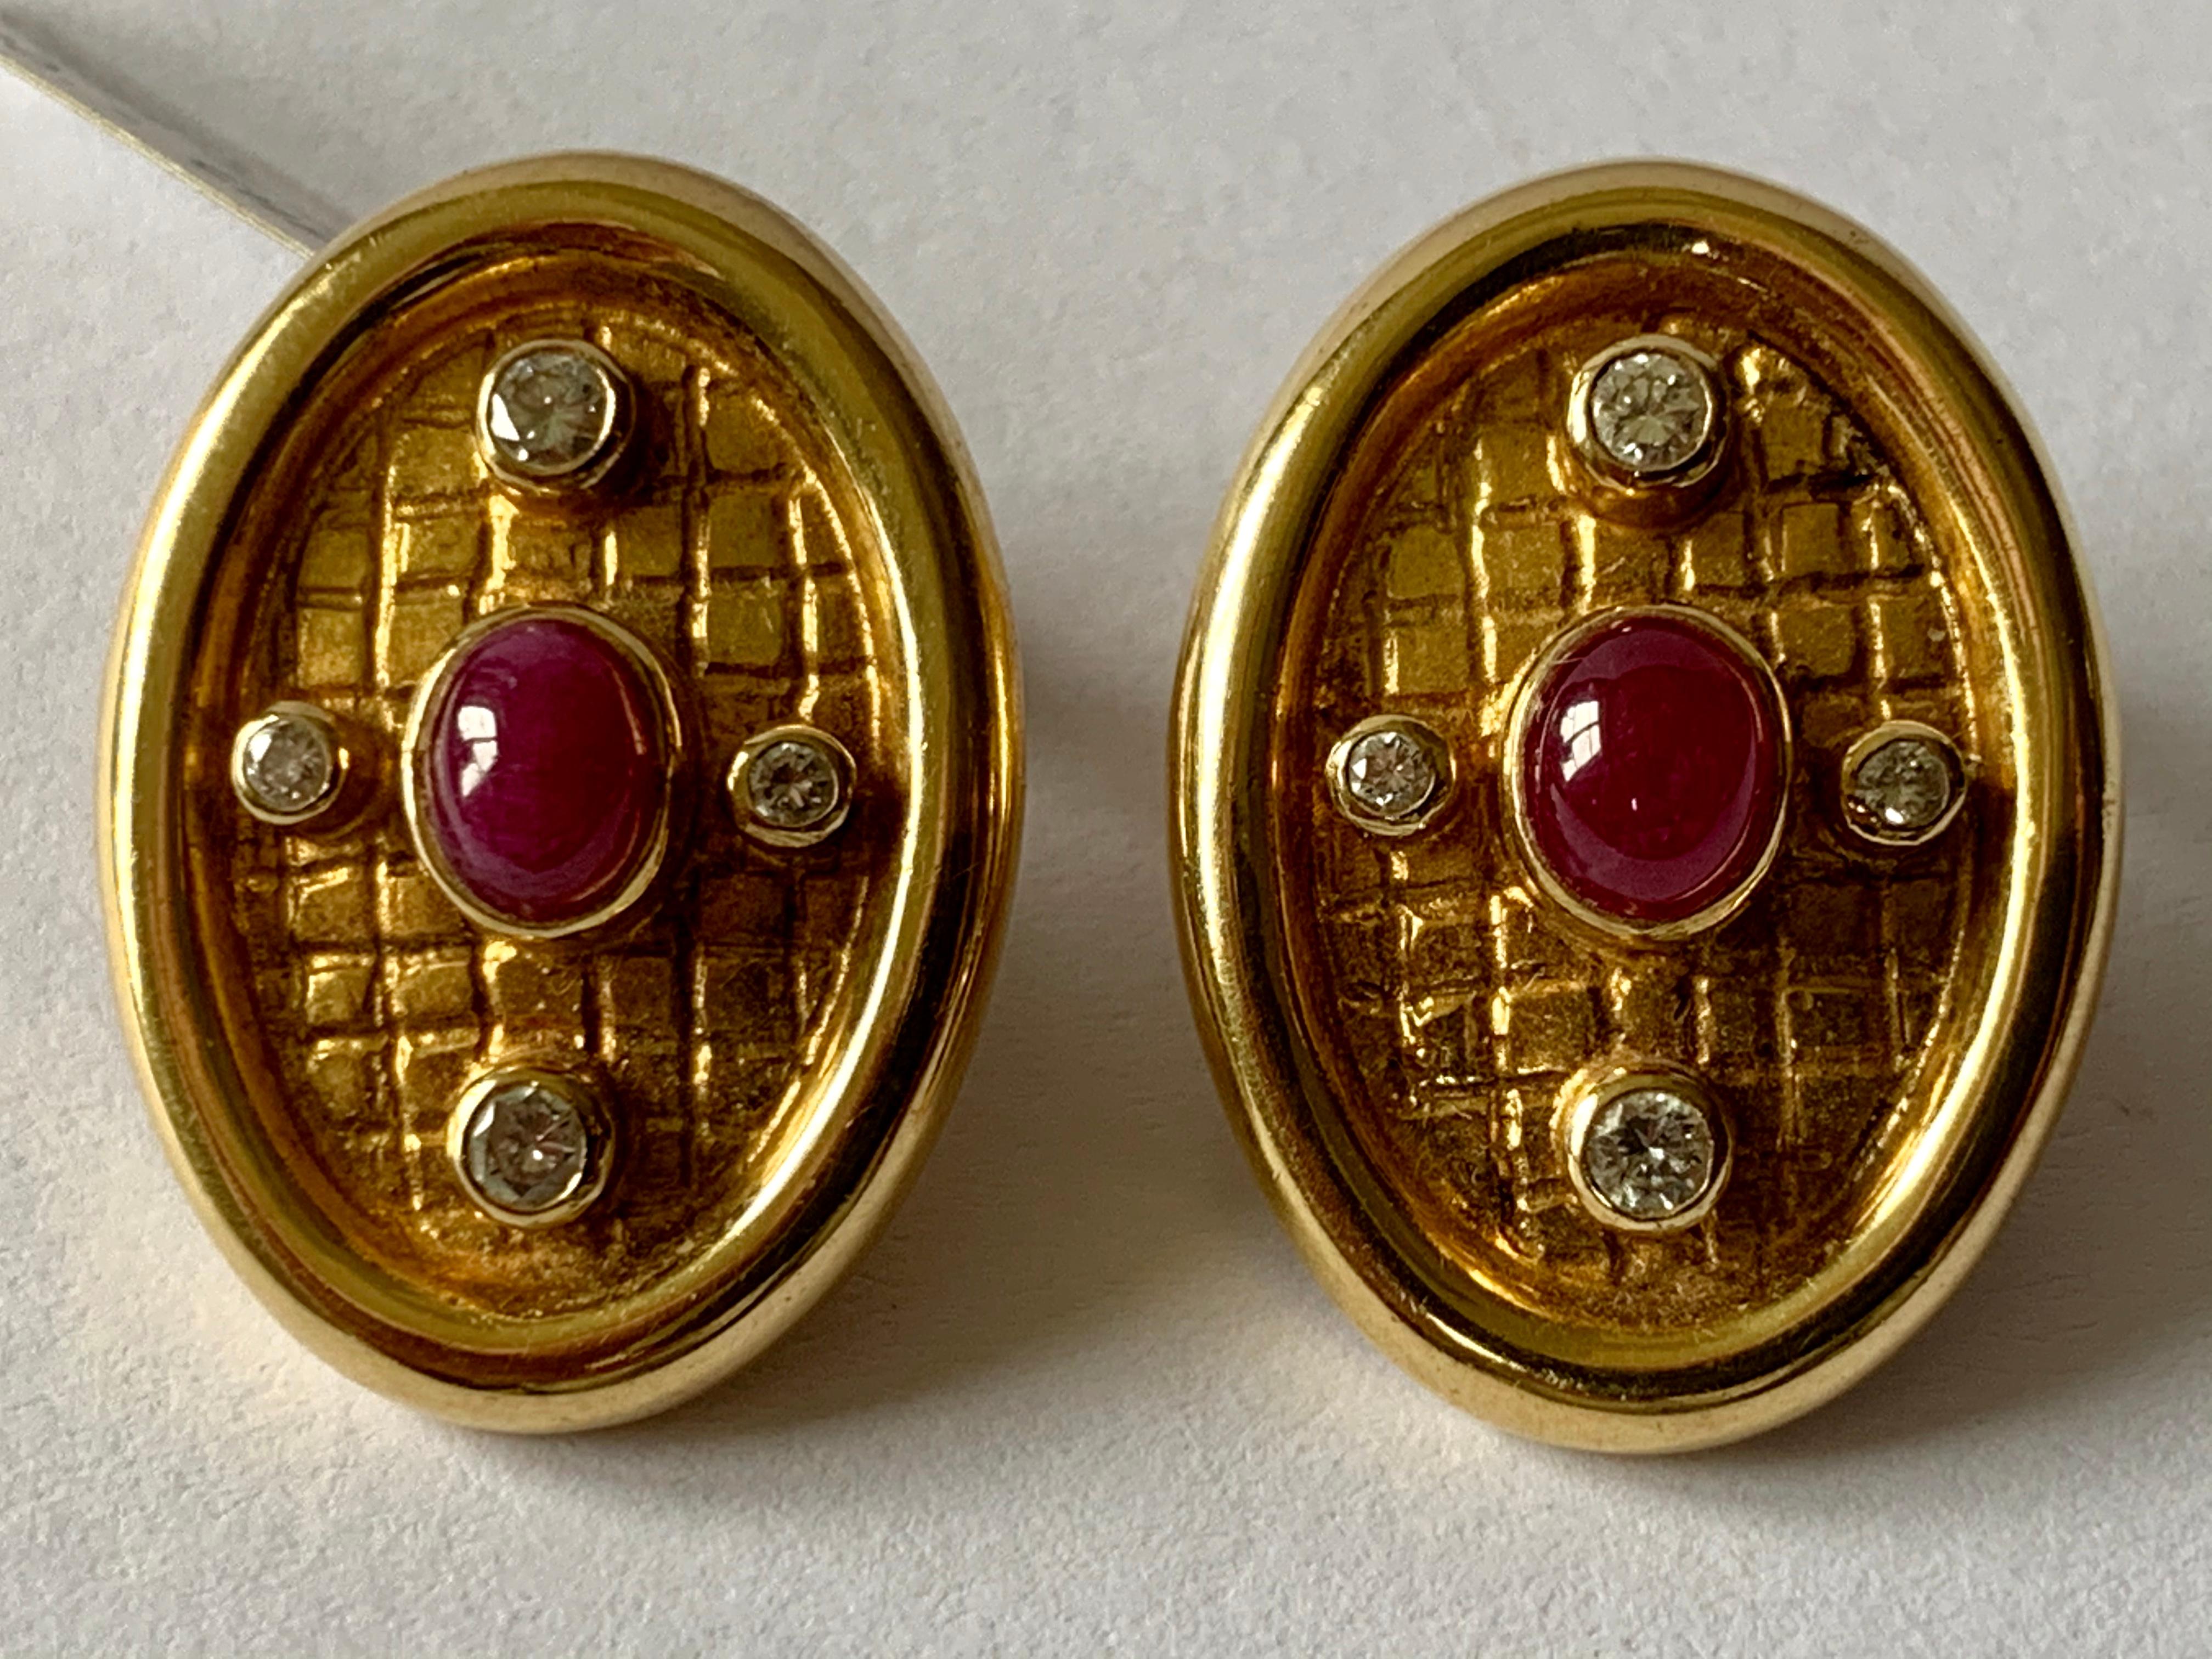 Clips d'oreille Lalaounis en or 18 carats sertis de 2 cabochons en rubis et de 8 diamants taille brillant.  Ils mesurent 2,50 cm sur 1,60 cm . Estampillé Lalaounis et marques d'or. 
L'authenticité et le remboursement sont garantis !